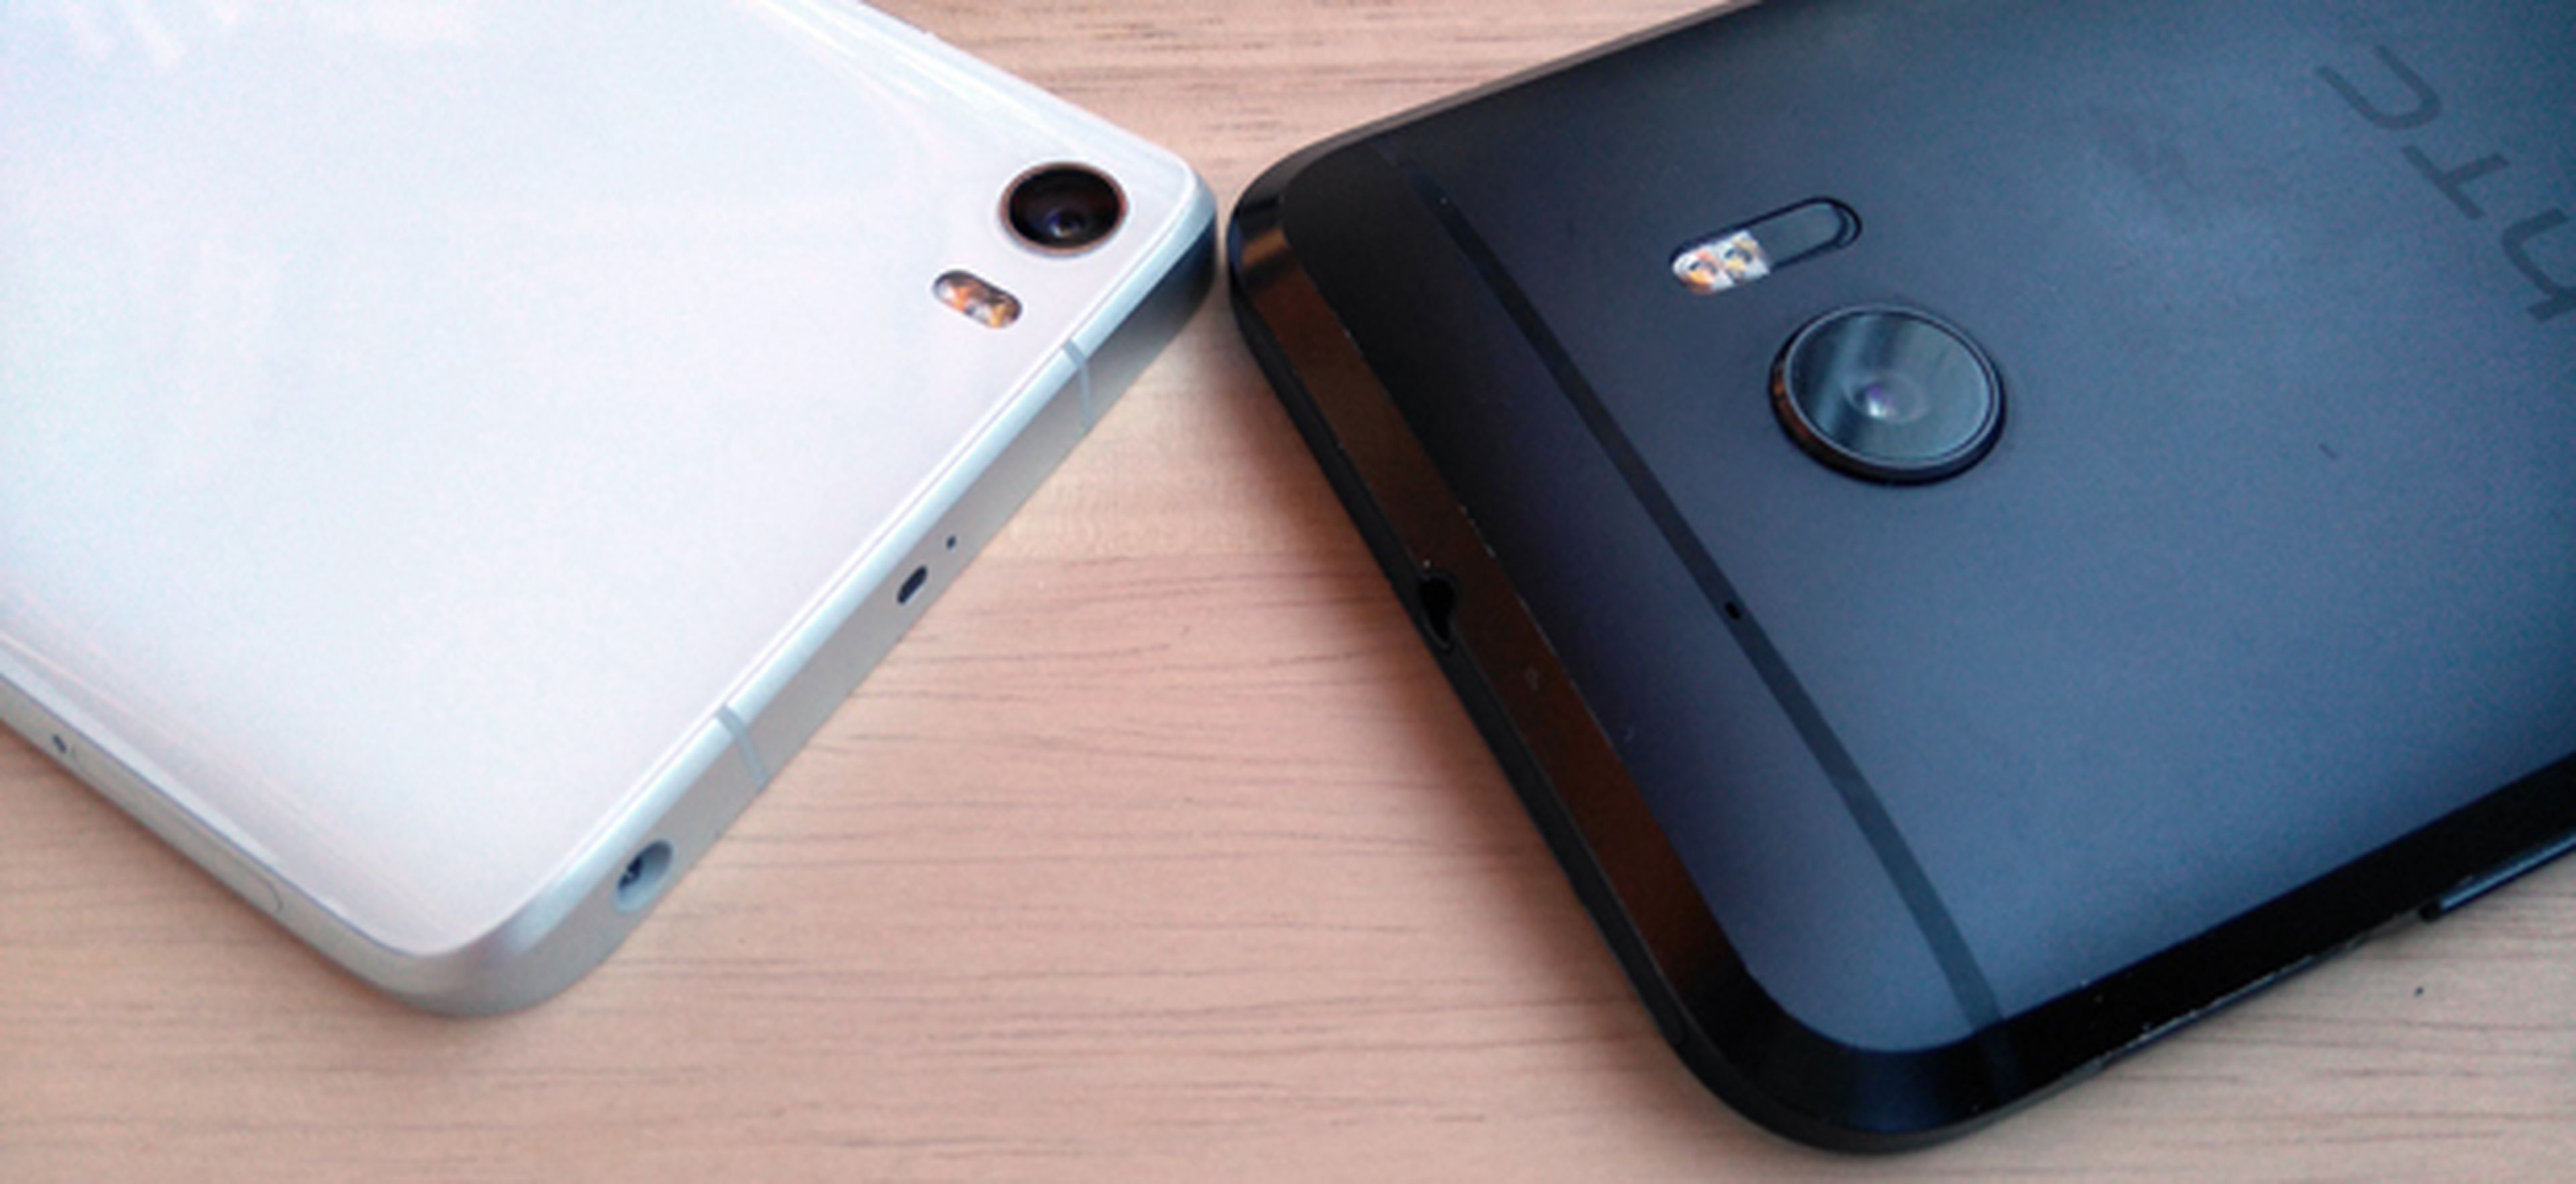 Camara HTC 10 vs Xiaomi Mi 5